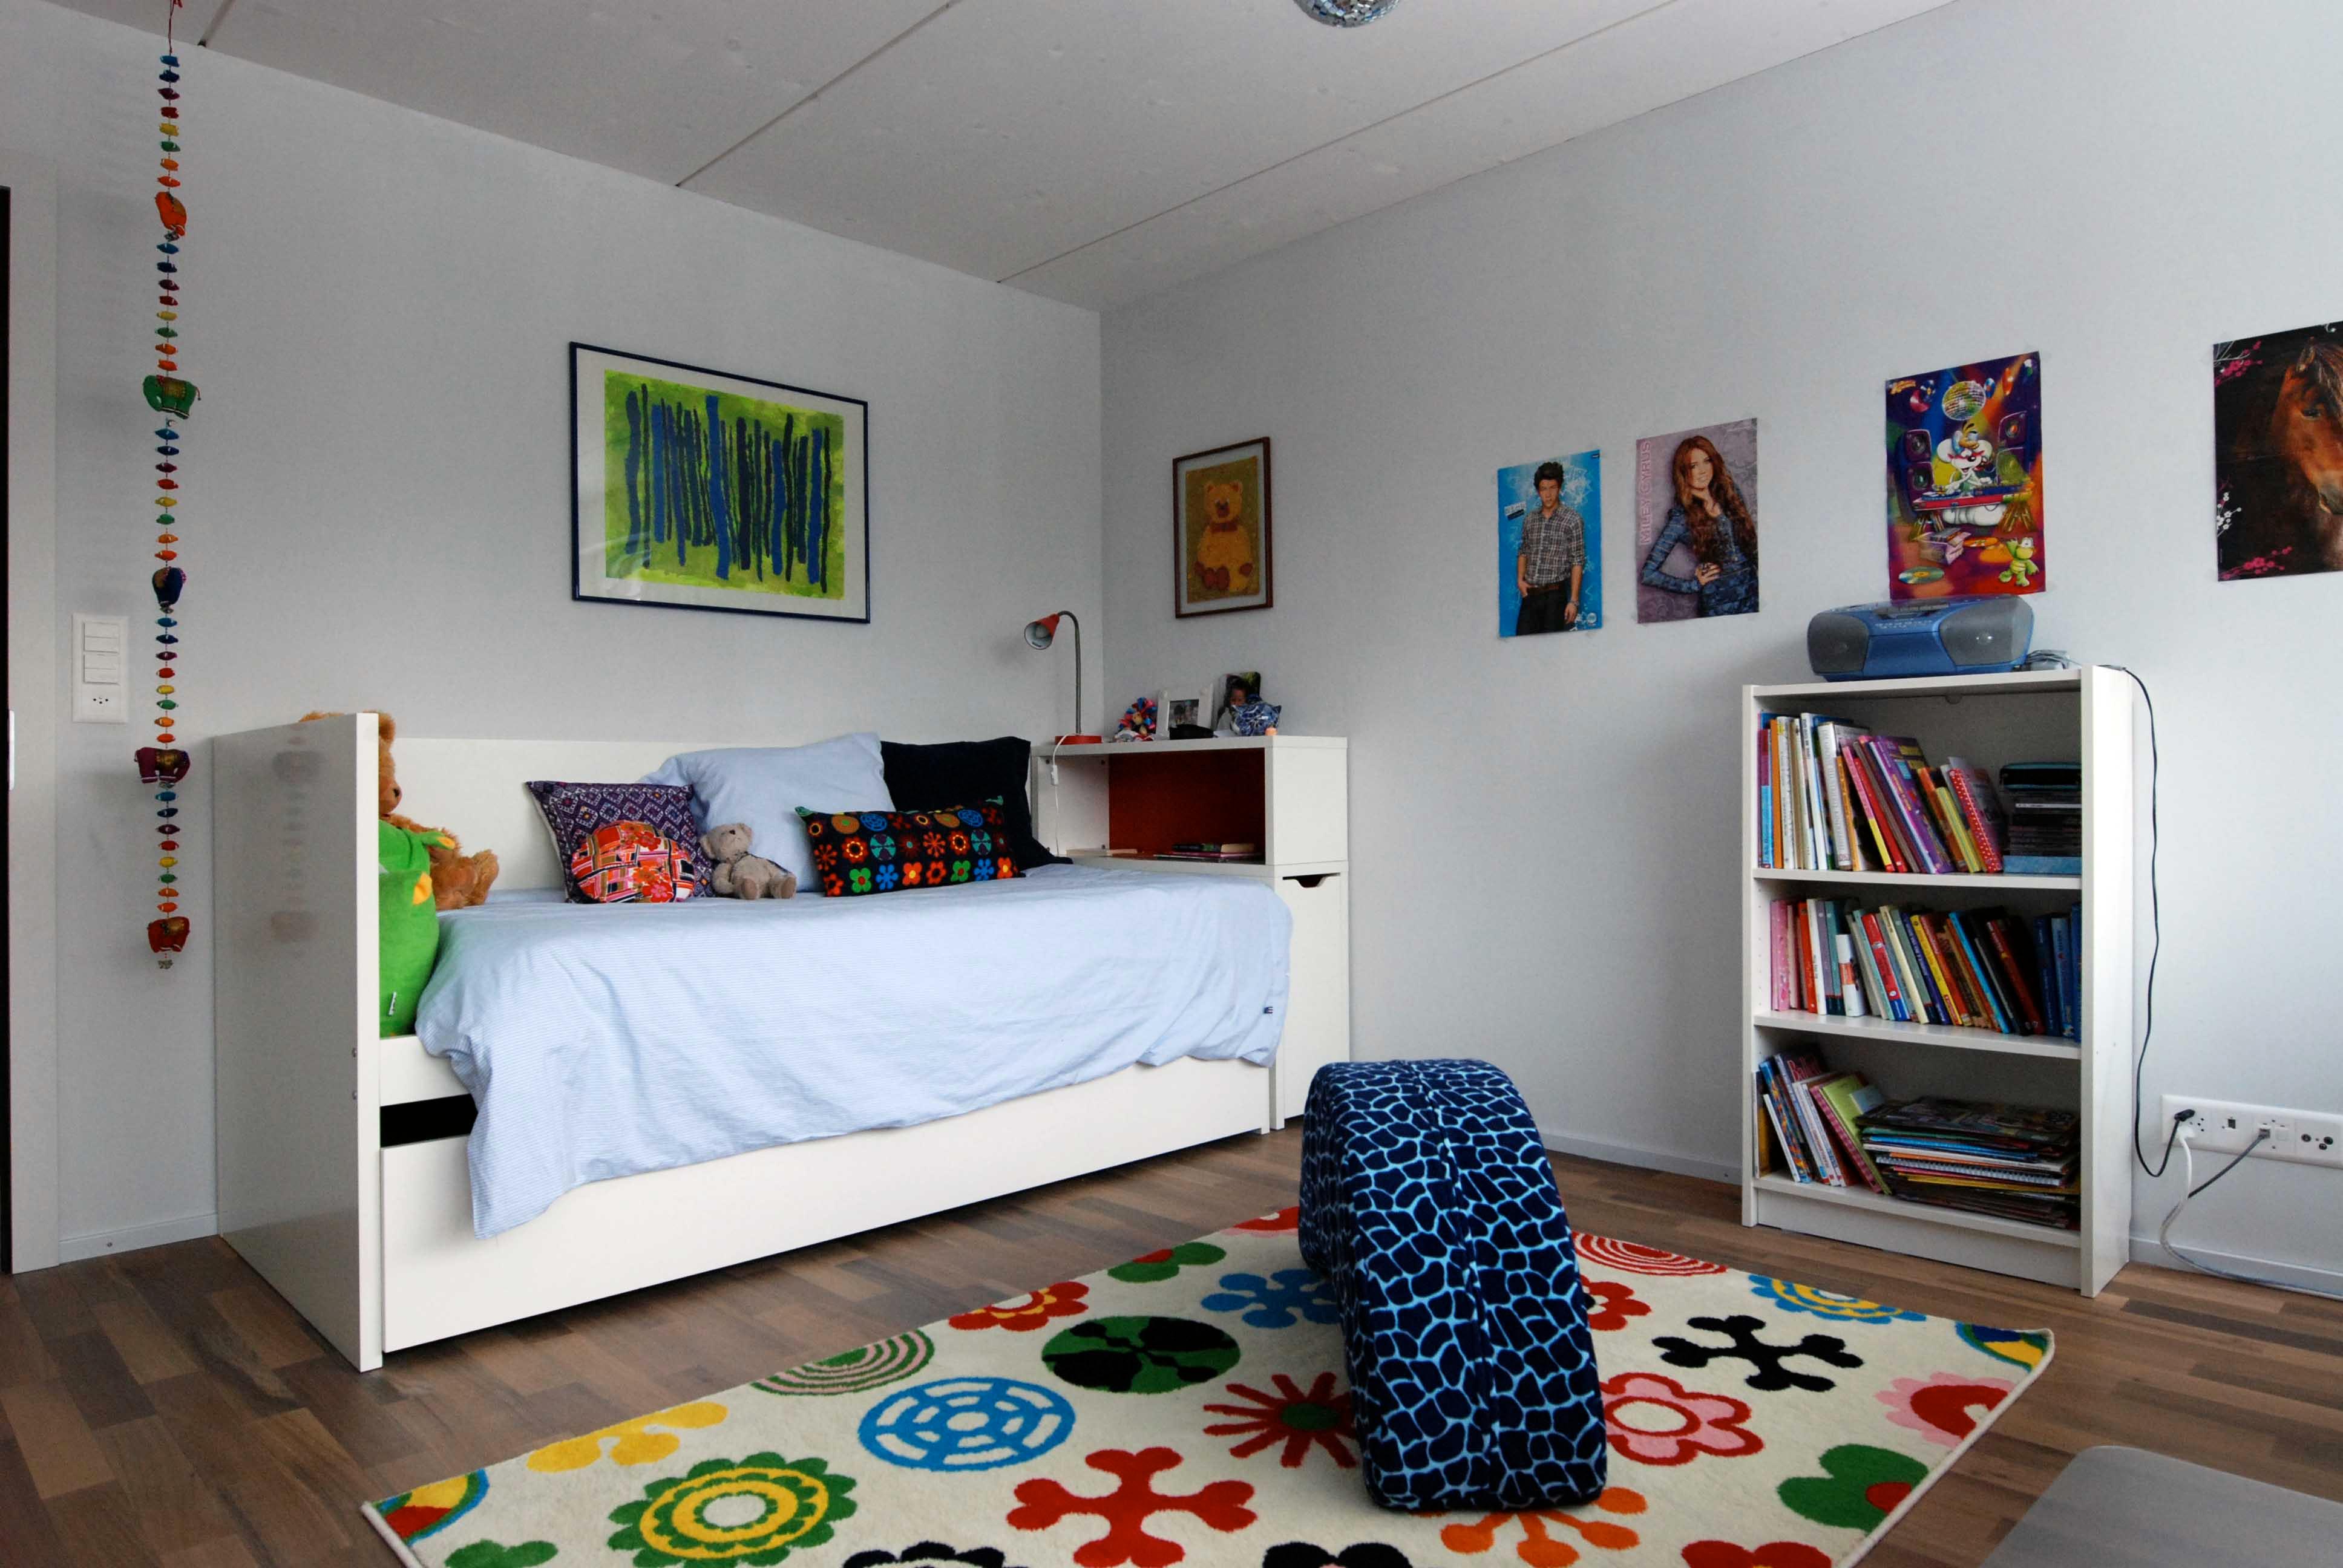  Architektur-Reportage Thun roter Kubus: Naturbaustoffe finden sich auch im bunten Kinderzimmer